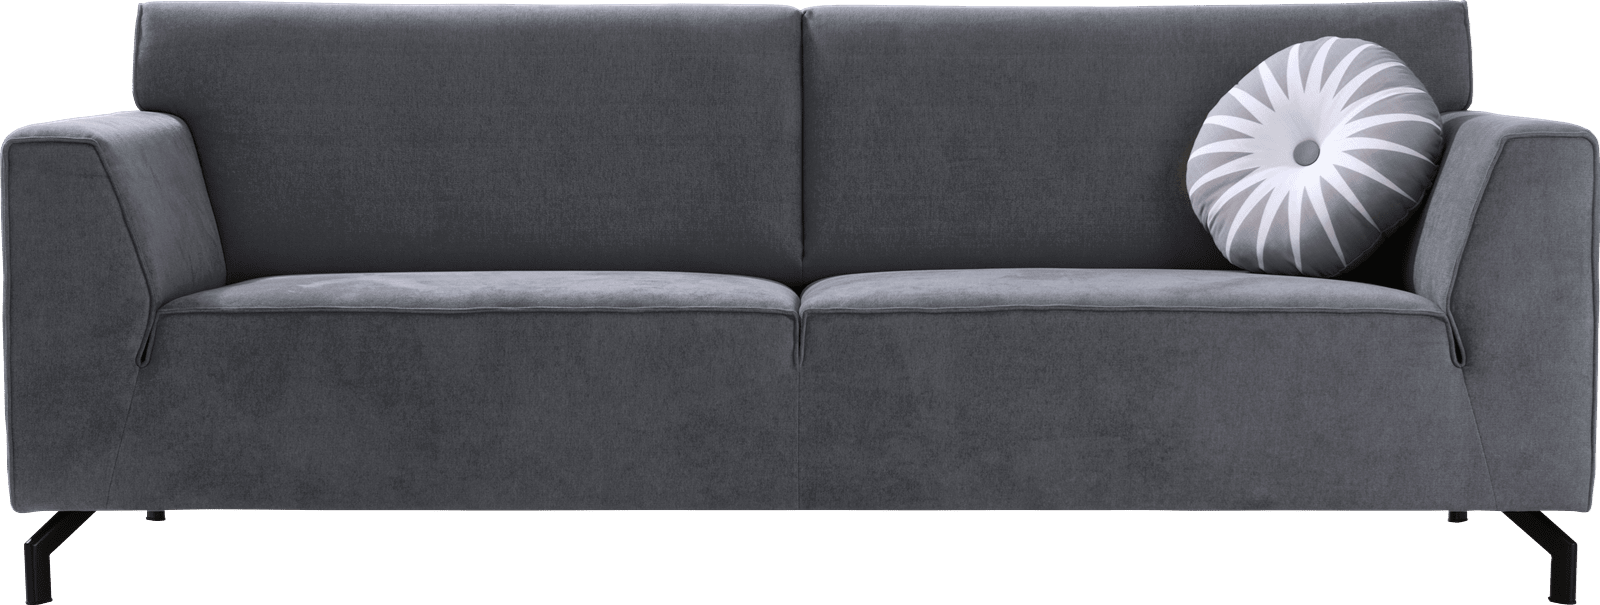 Henders & Hazel - Novara - Modern - Sofas - 3-Sitzer